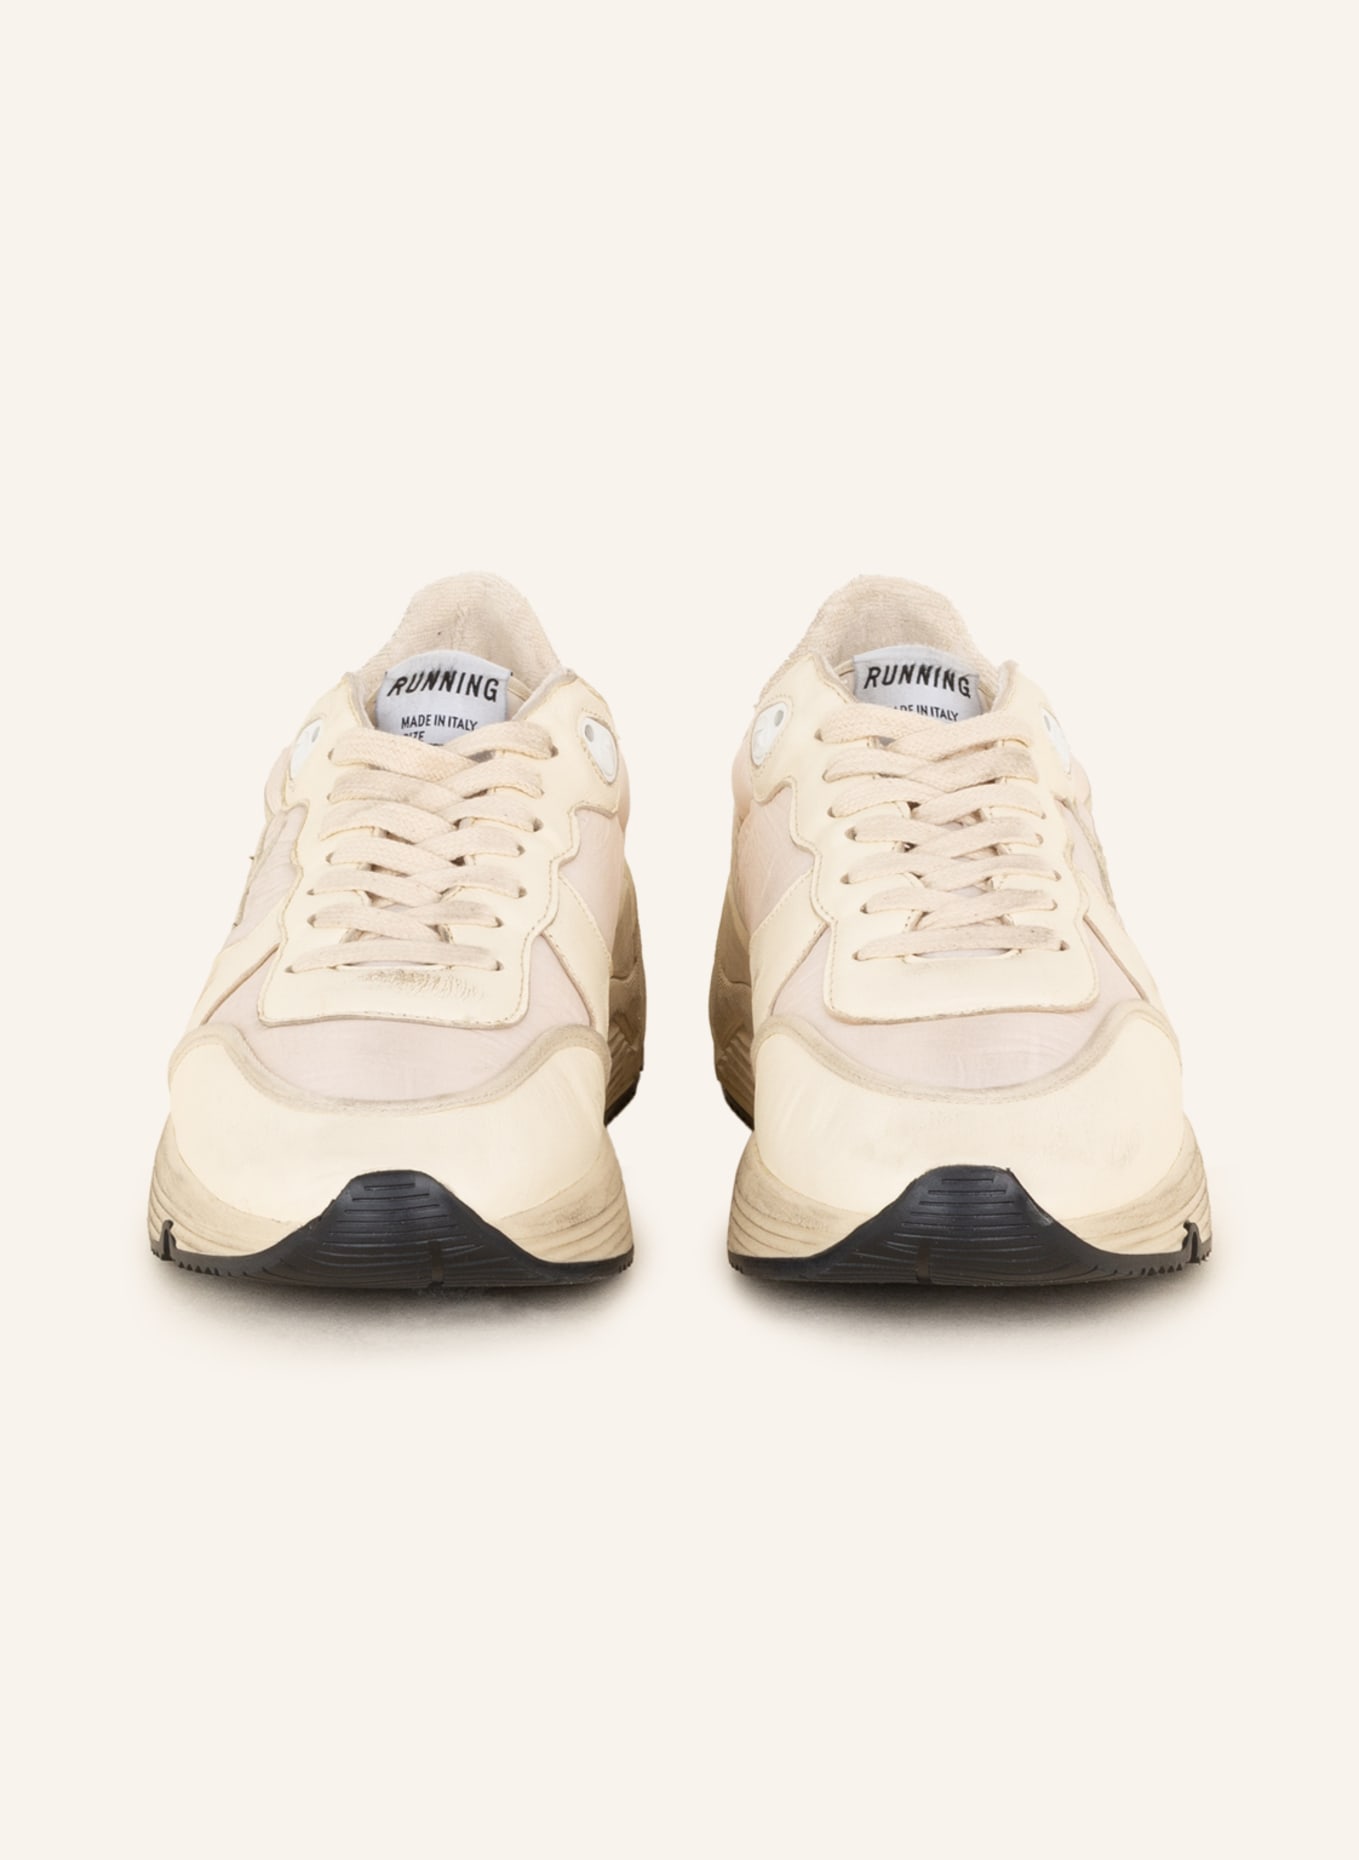 GOLDEN GOOSE Sneaker RUNNING SOLE, Farbe: WEISS/ HELLROSA (Bild 3)